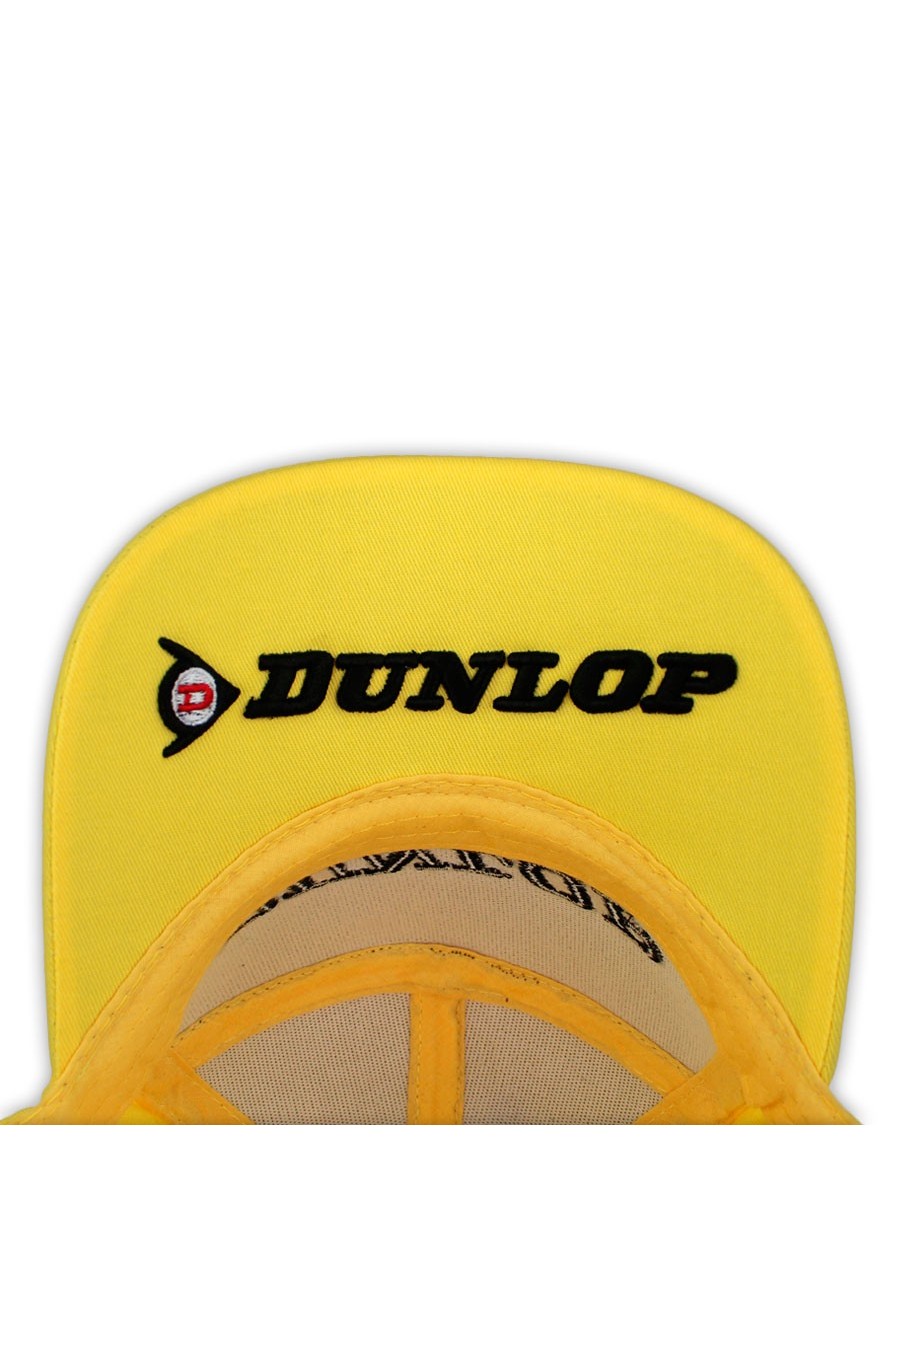 Dunlop Podium 1. Kap